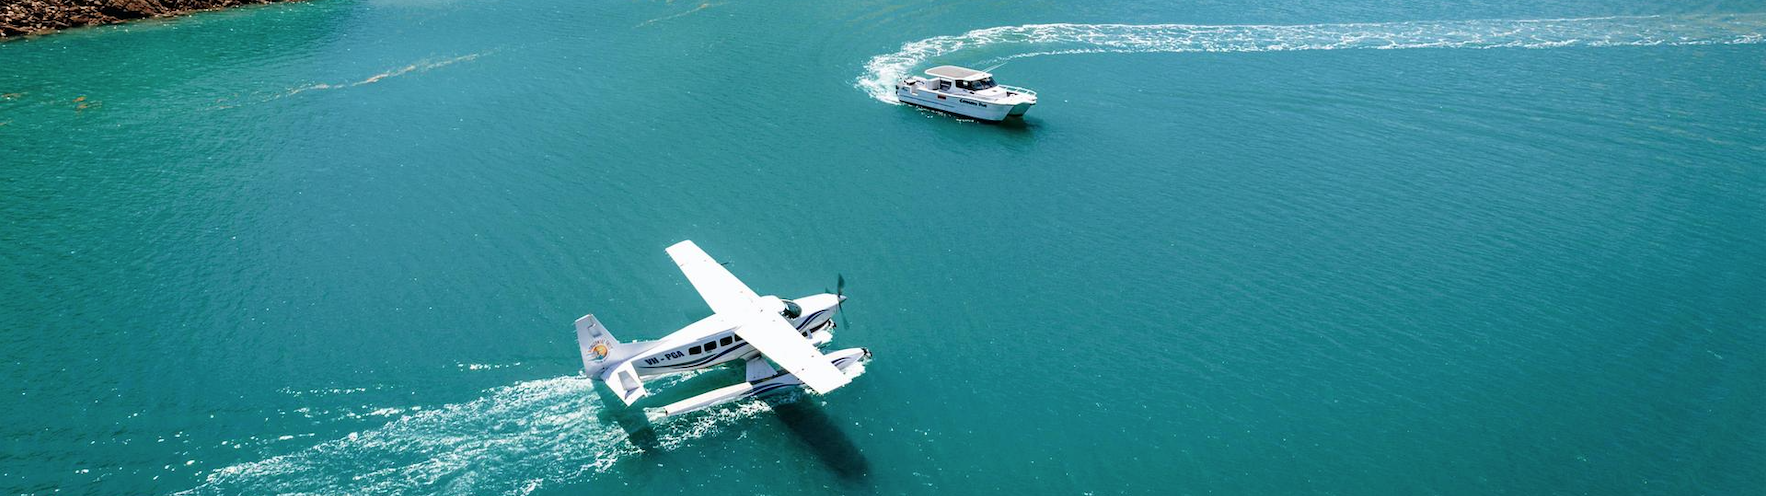 ダービーオーストラリア 水上の飛行機とボート